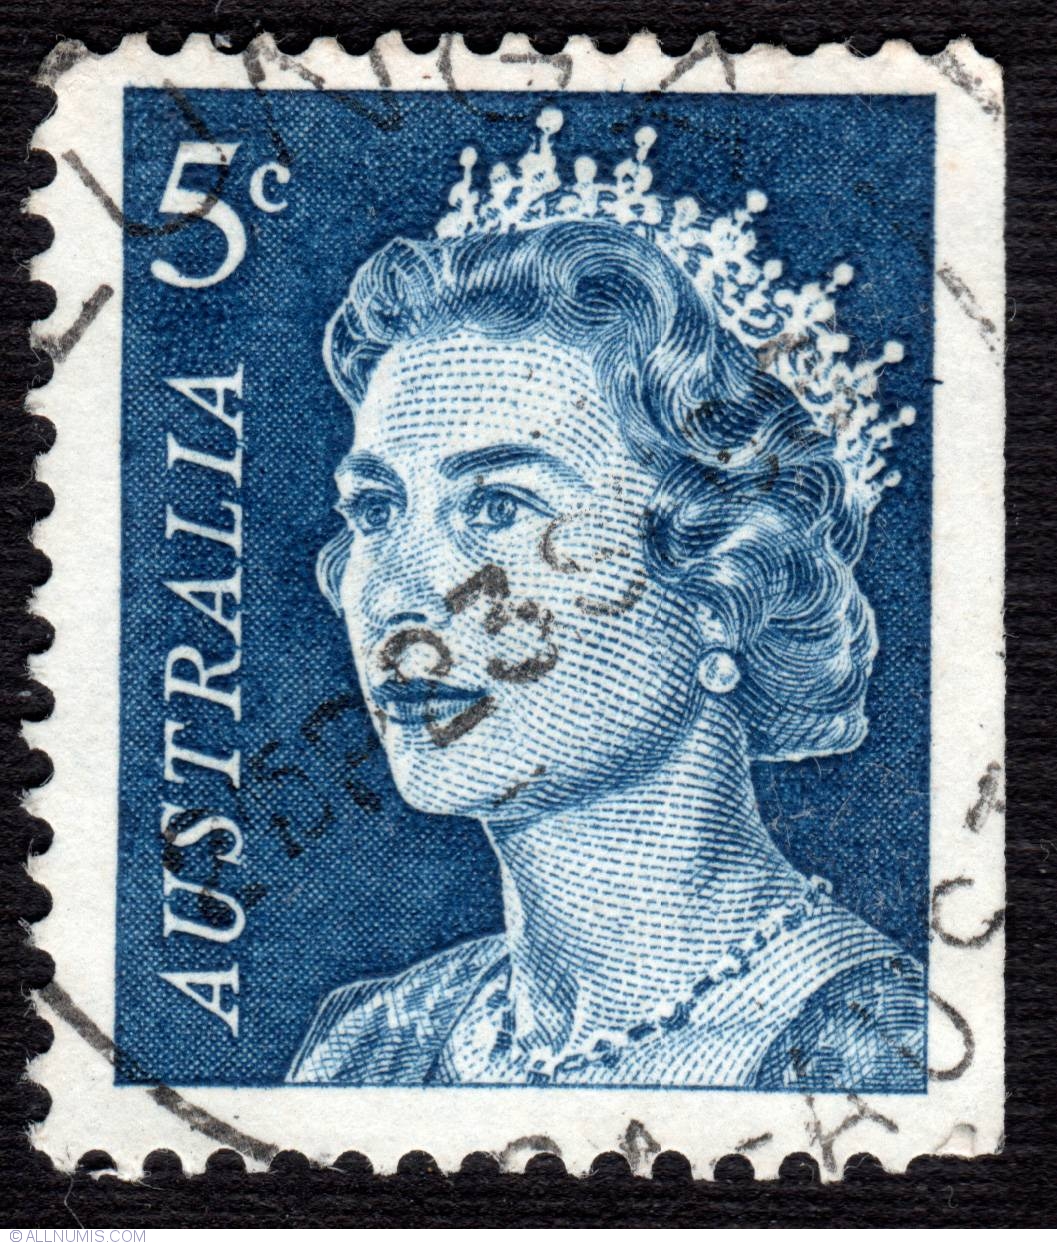 5¢ Queen Elizabeth II 1967, 1967 - Australia - Stamp - 6094